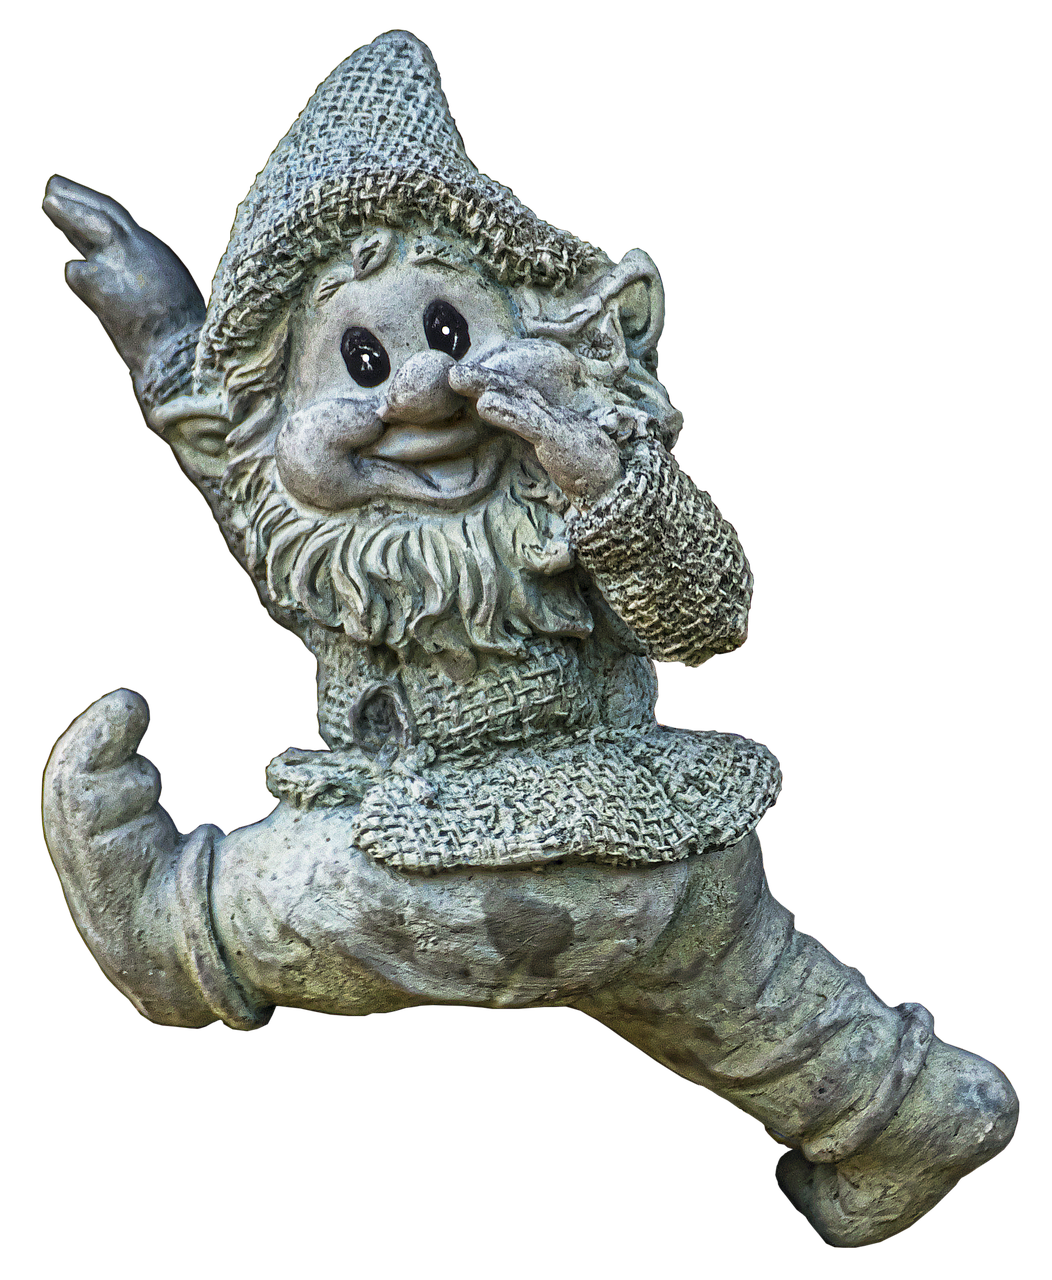 dwarf gnome garden gnome free photo